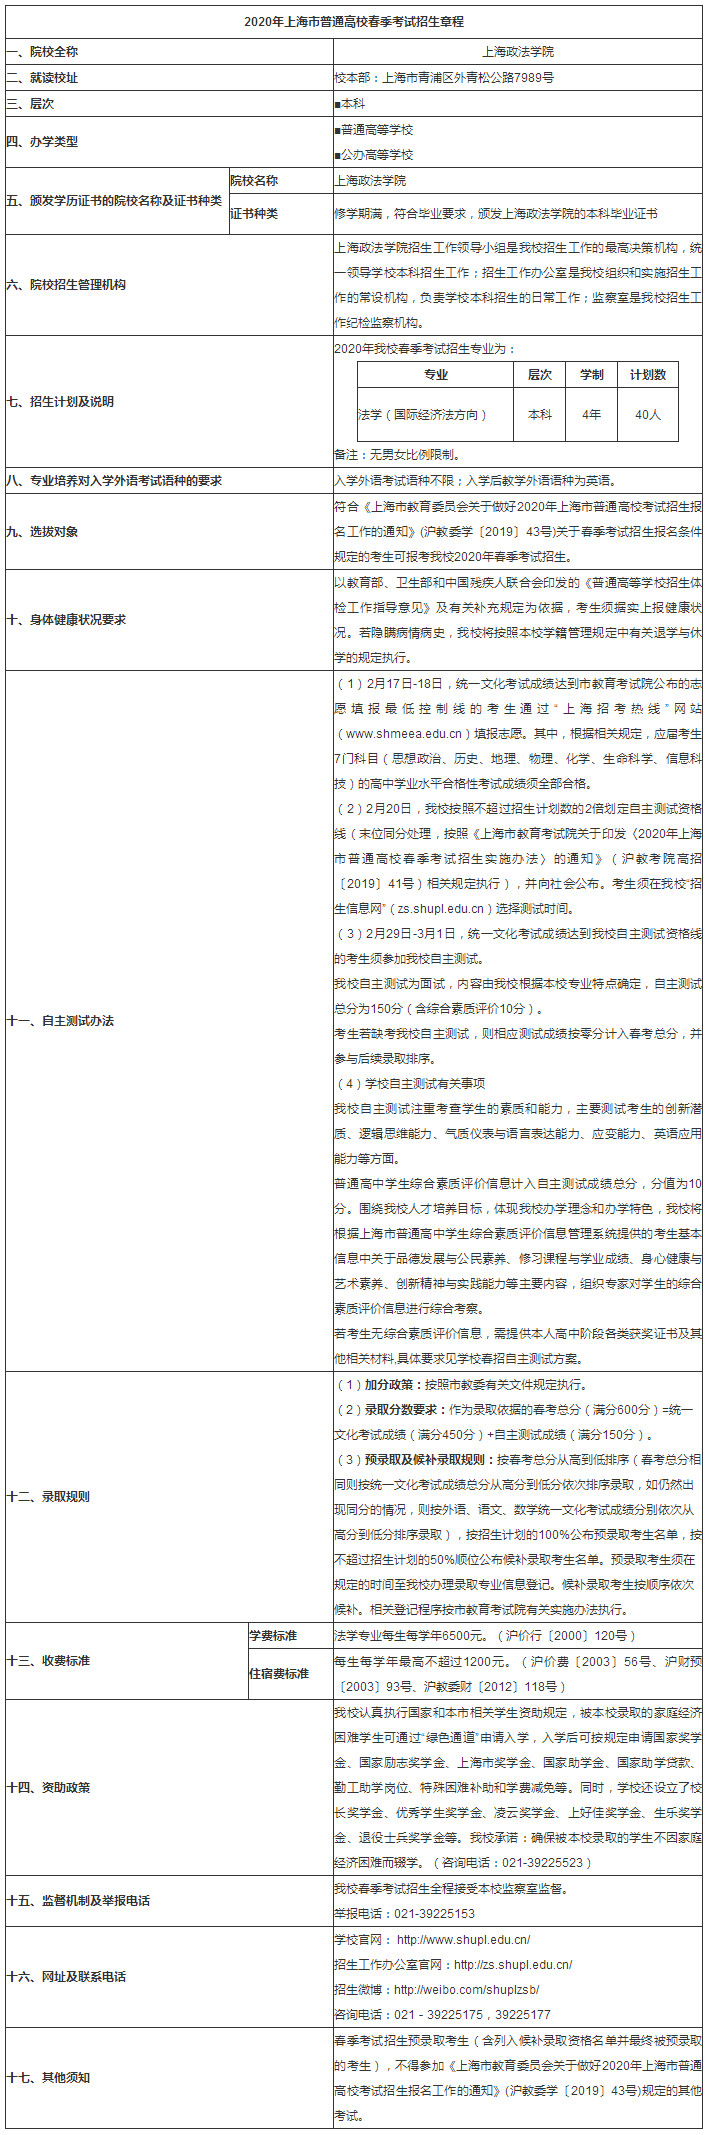 上海政法学院2020年春季高考招生章程.jpg